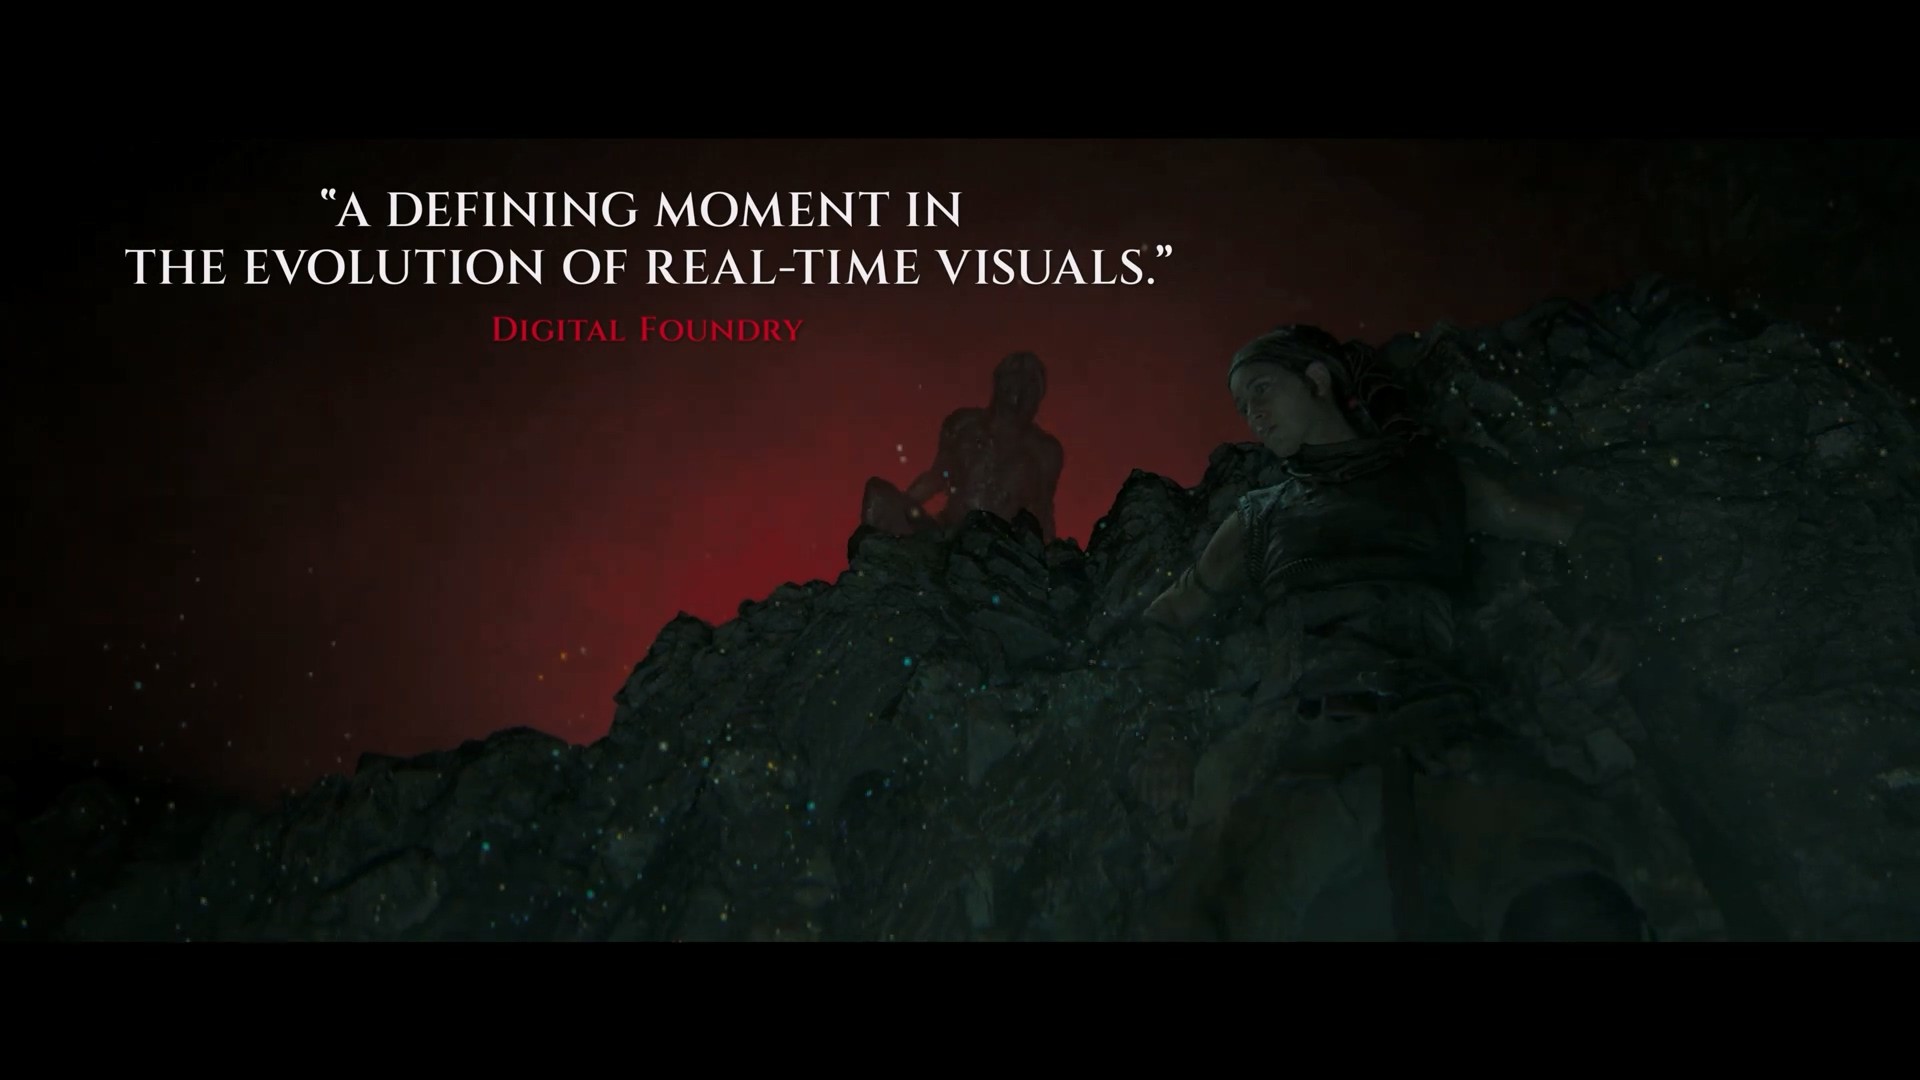 畫面表現很出色《地獄之刃2》媒體贊譽宣傳片公布